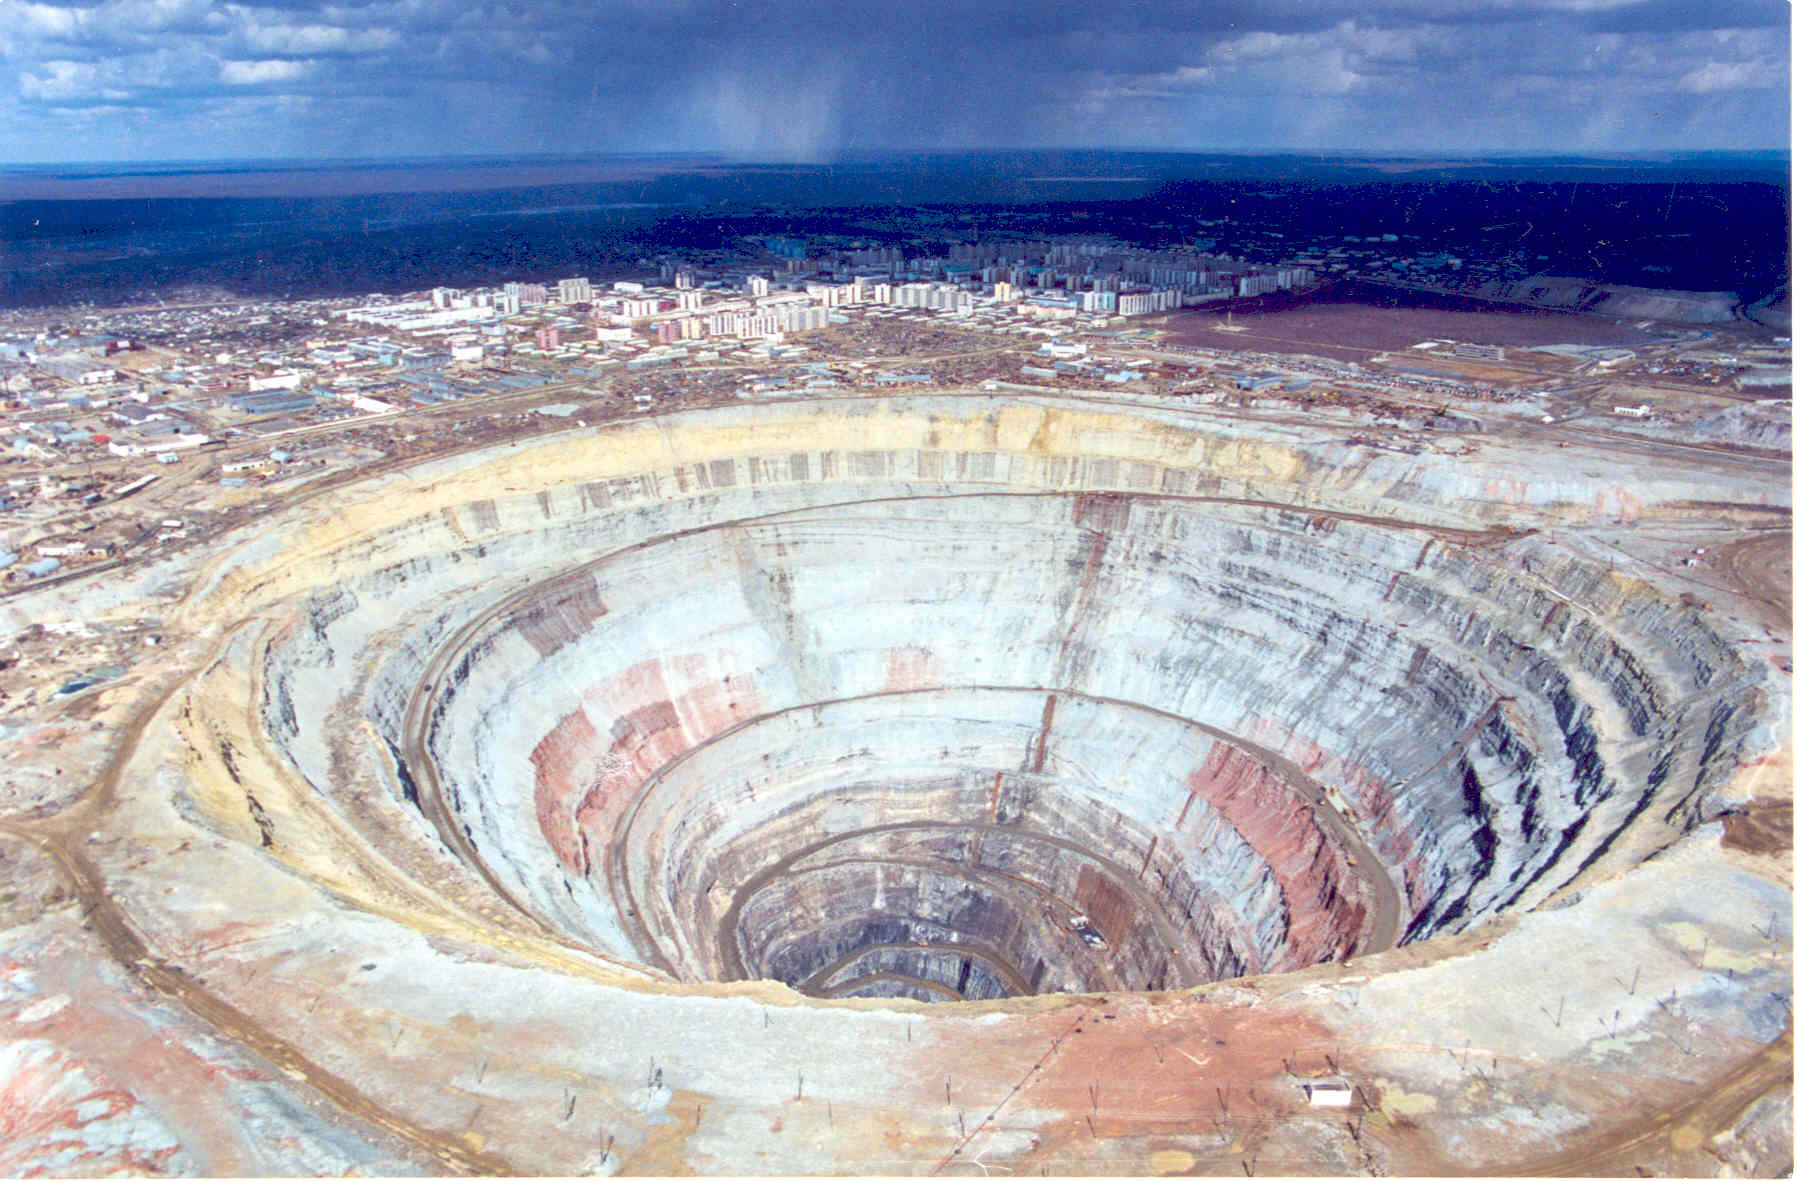 Алмазная шахта в городе Мирный — место, где даже вертолетам запрещено летать 24